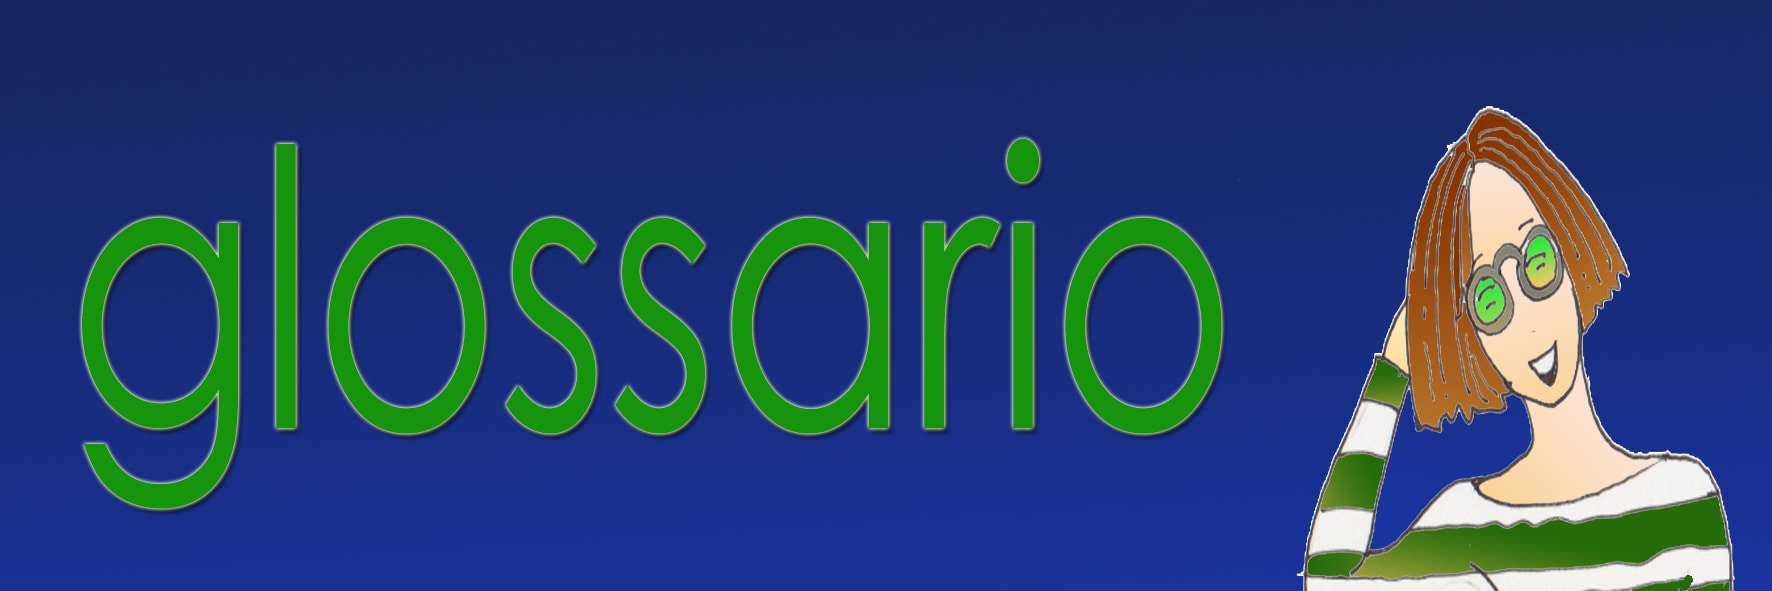 Le versione di Eva : Indice Glossario. La scritta in verde: "glossario", del medesimo colore la maglietta a strisce verdi e bianche di una ragazza con gli occhiali, in mezzo busto, a destra della scritta